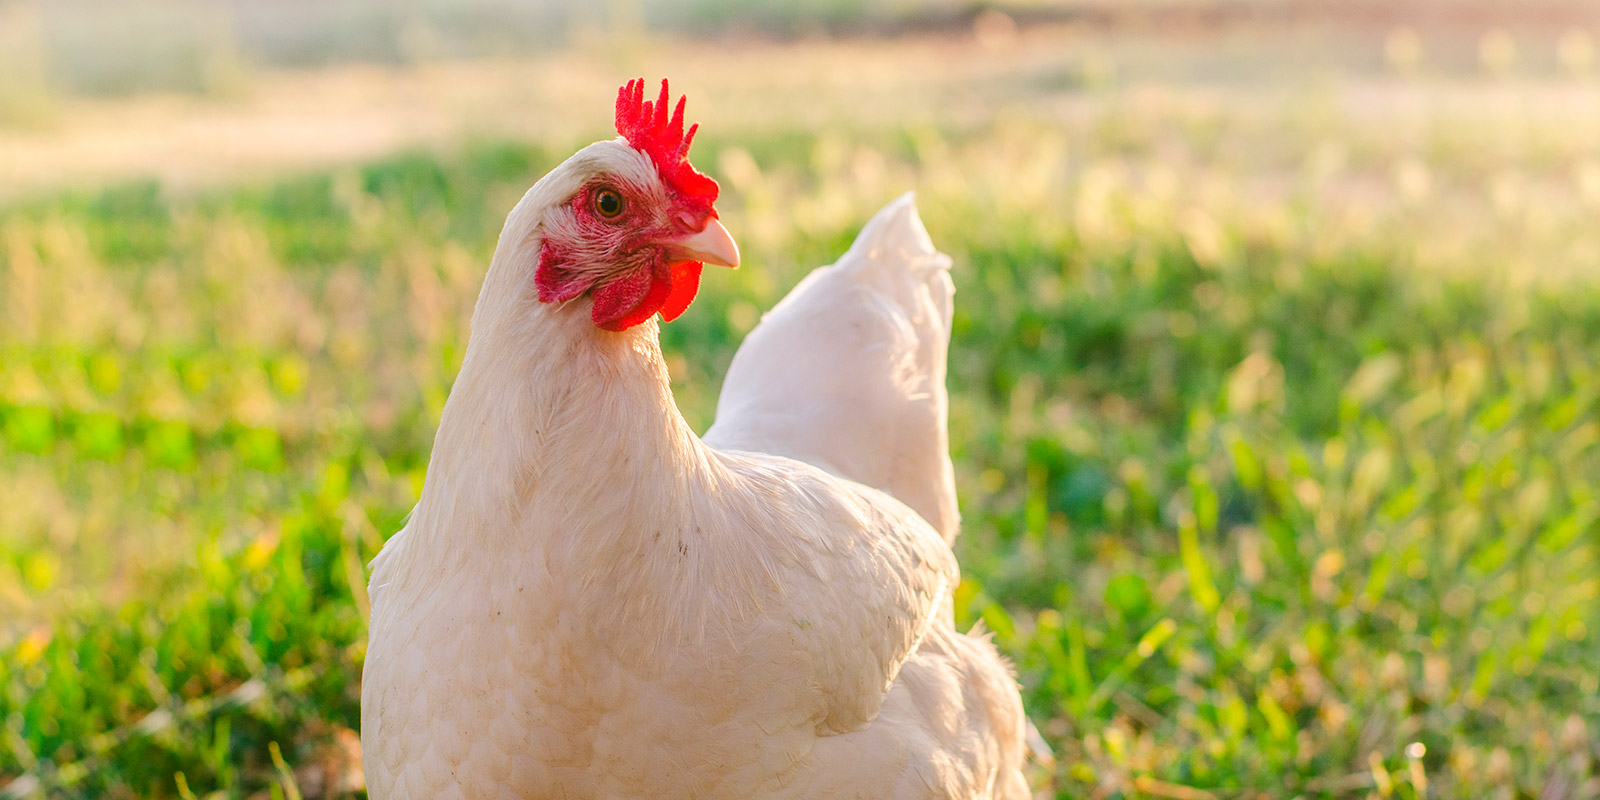 Gripe aviar: Cuidados y recomendaciones